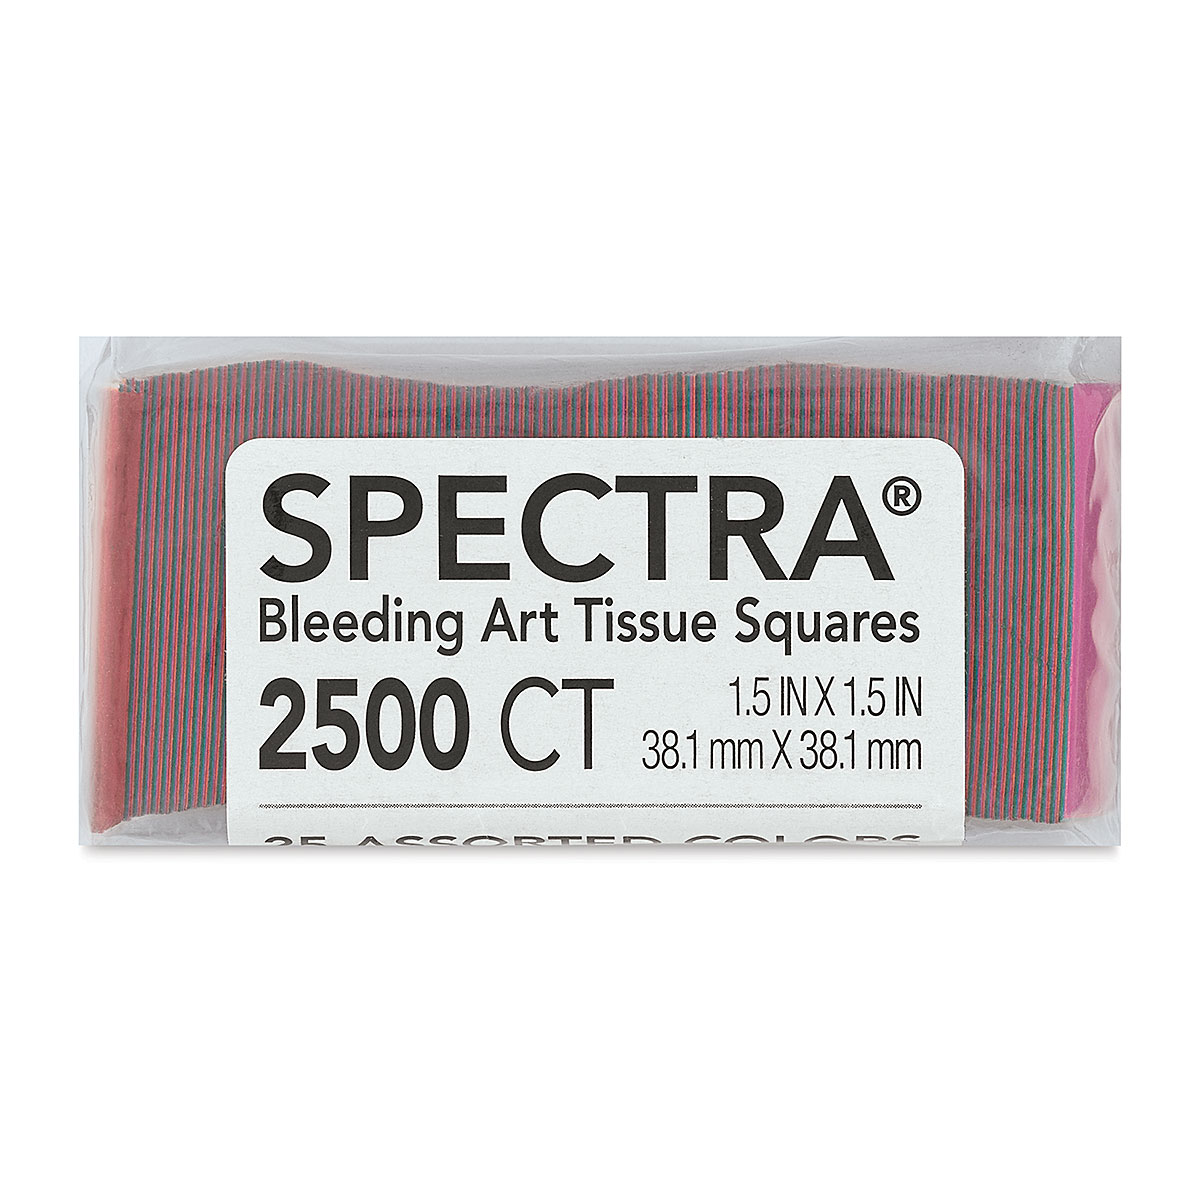 Spectra Bleeding Art Tissue